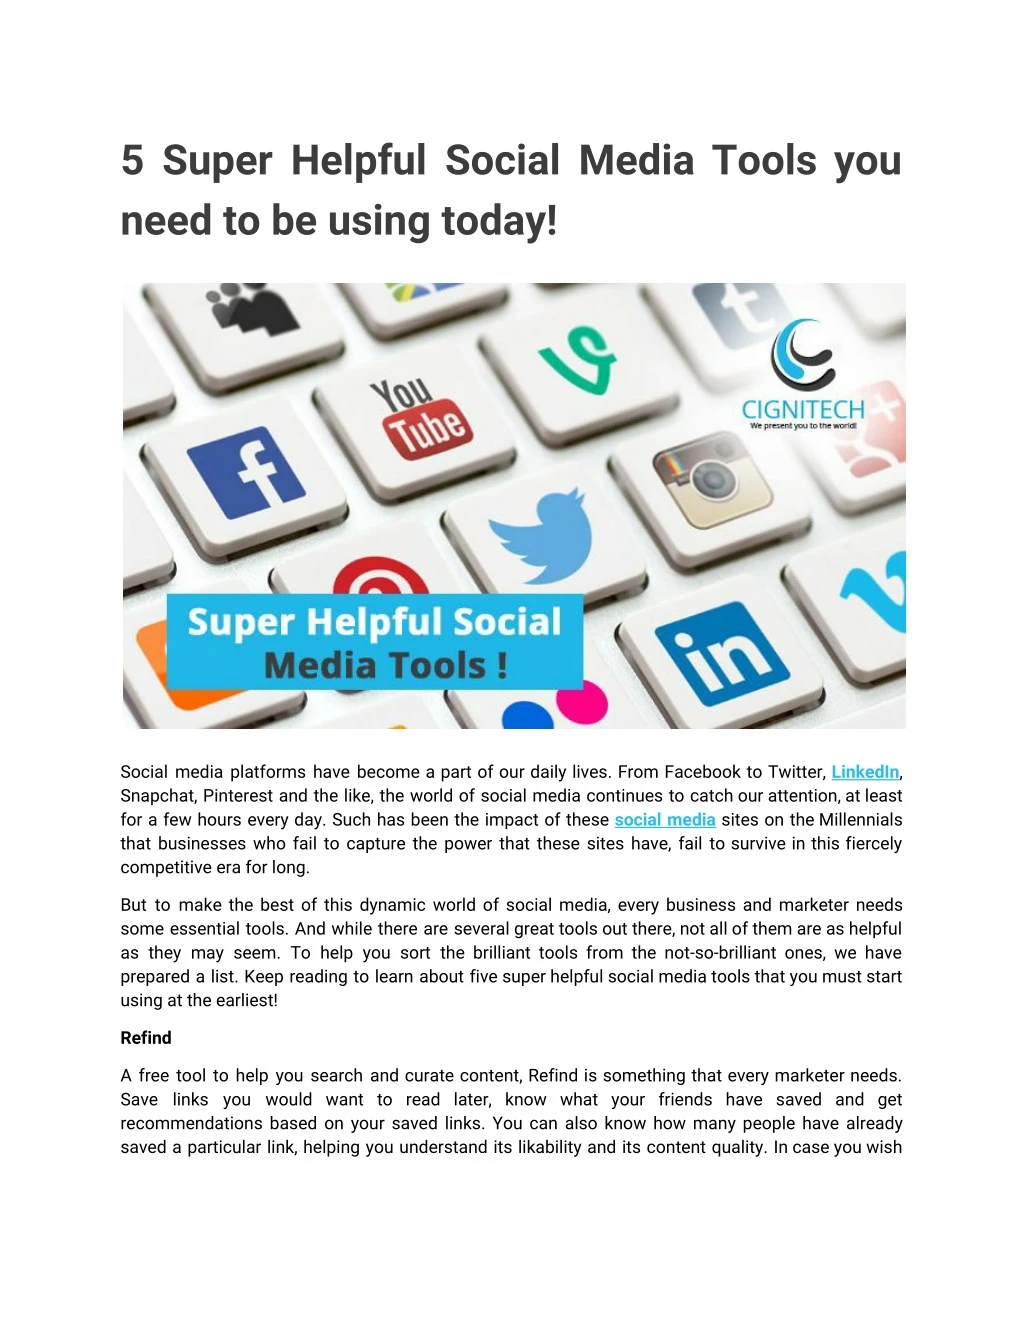 5 super helpful social media tools you need